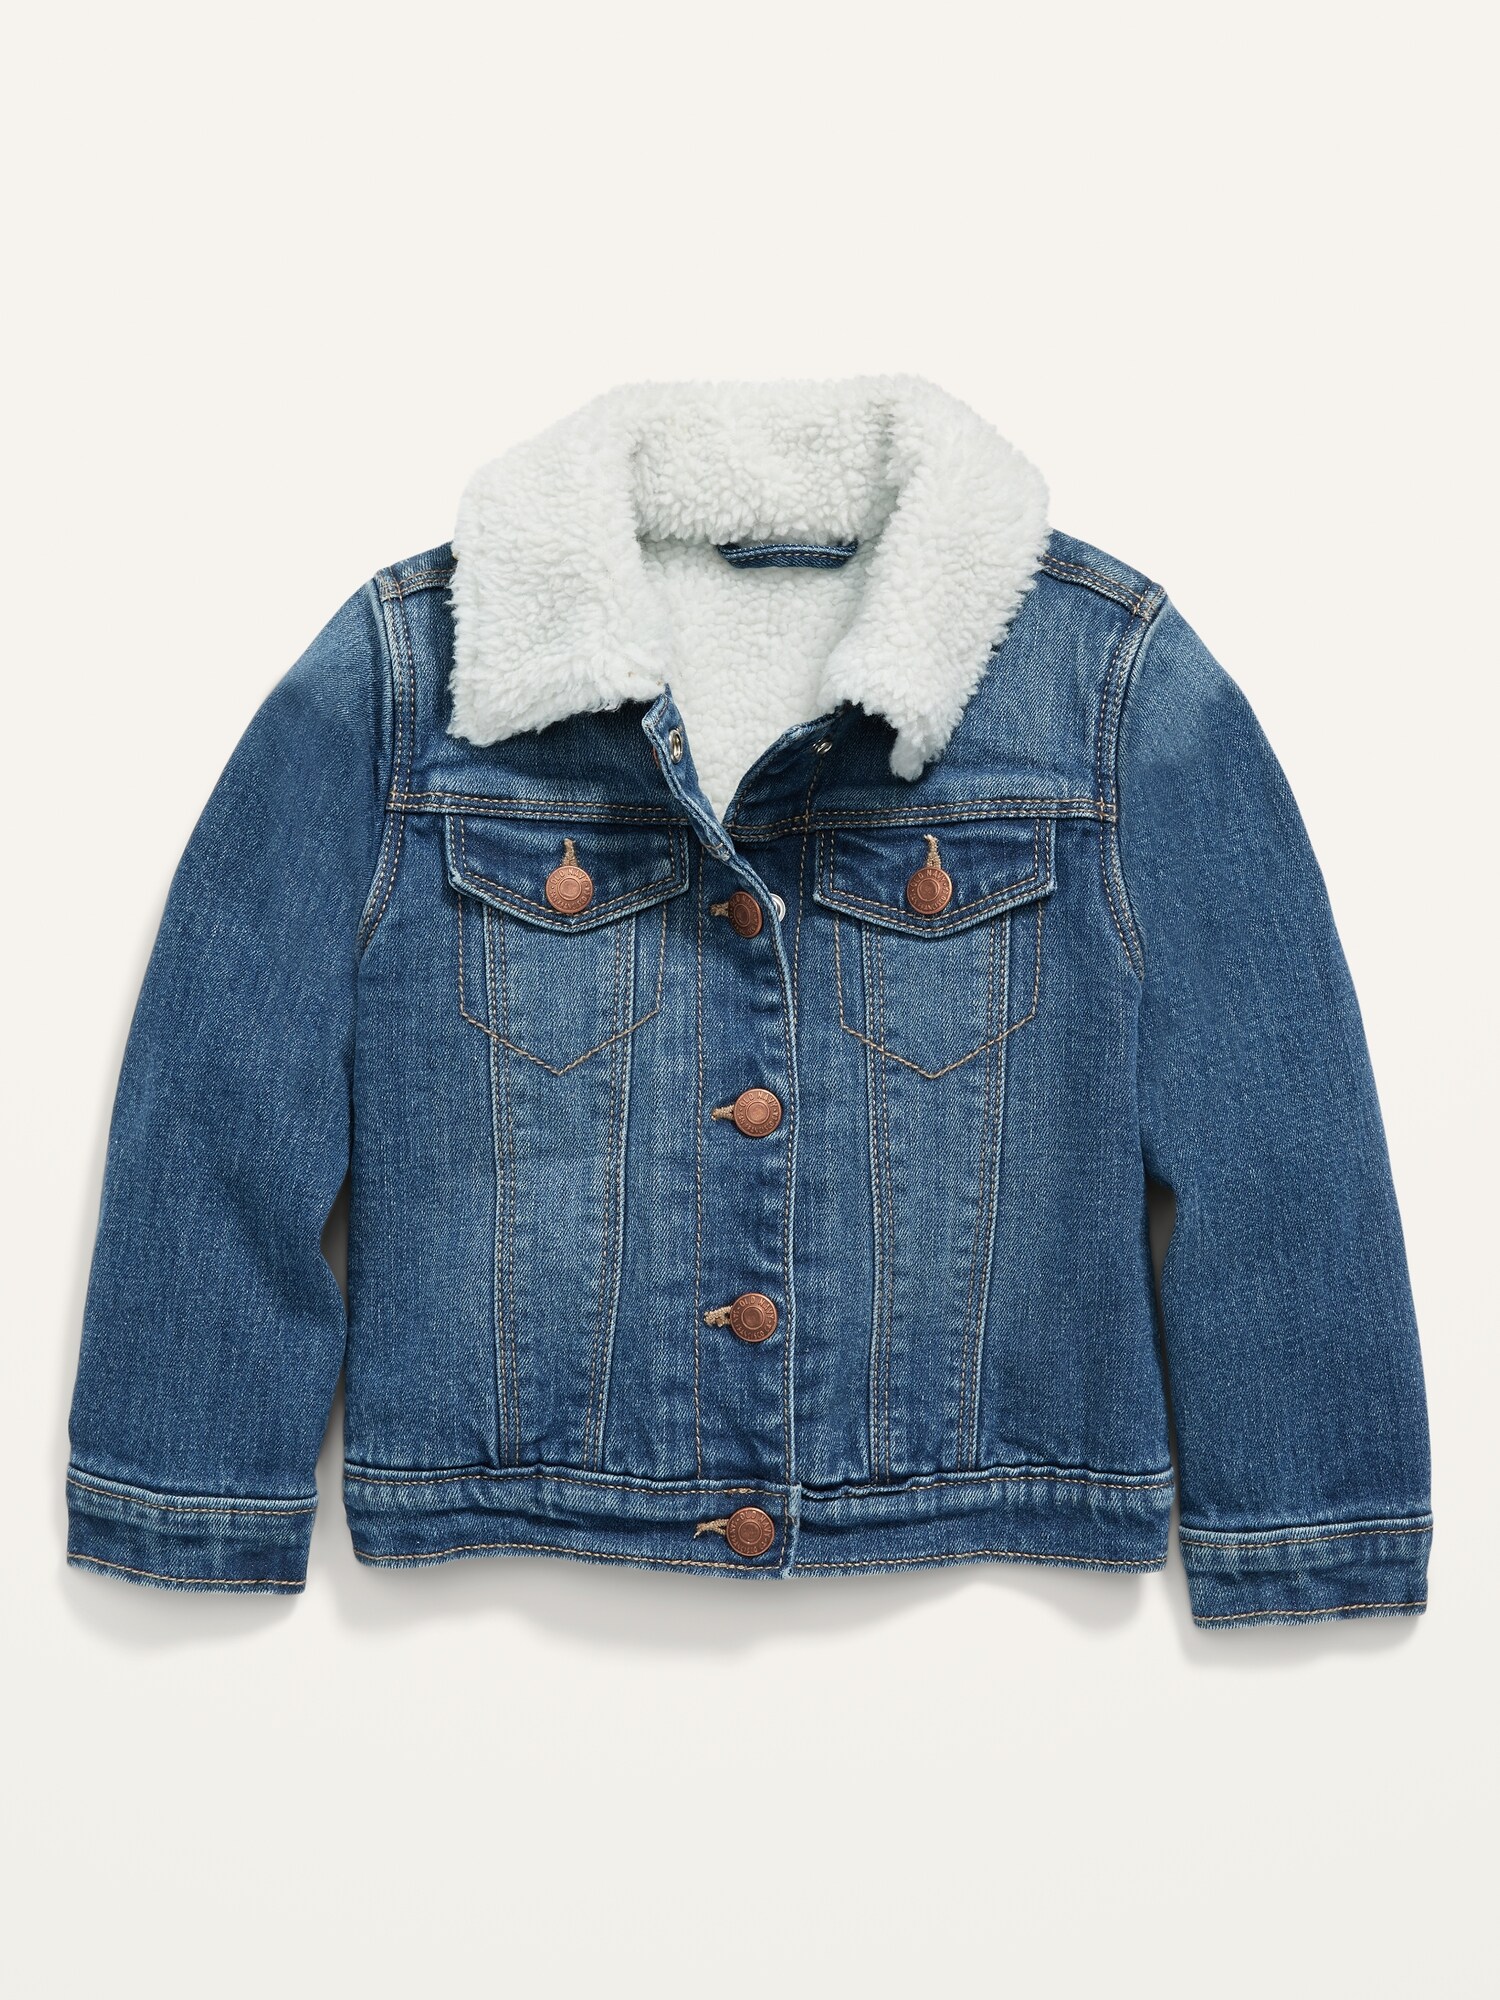 gap toddler denim jacket